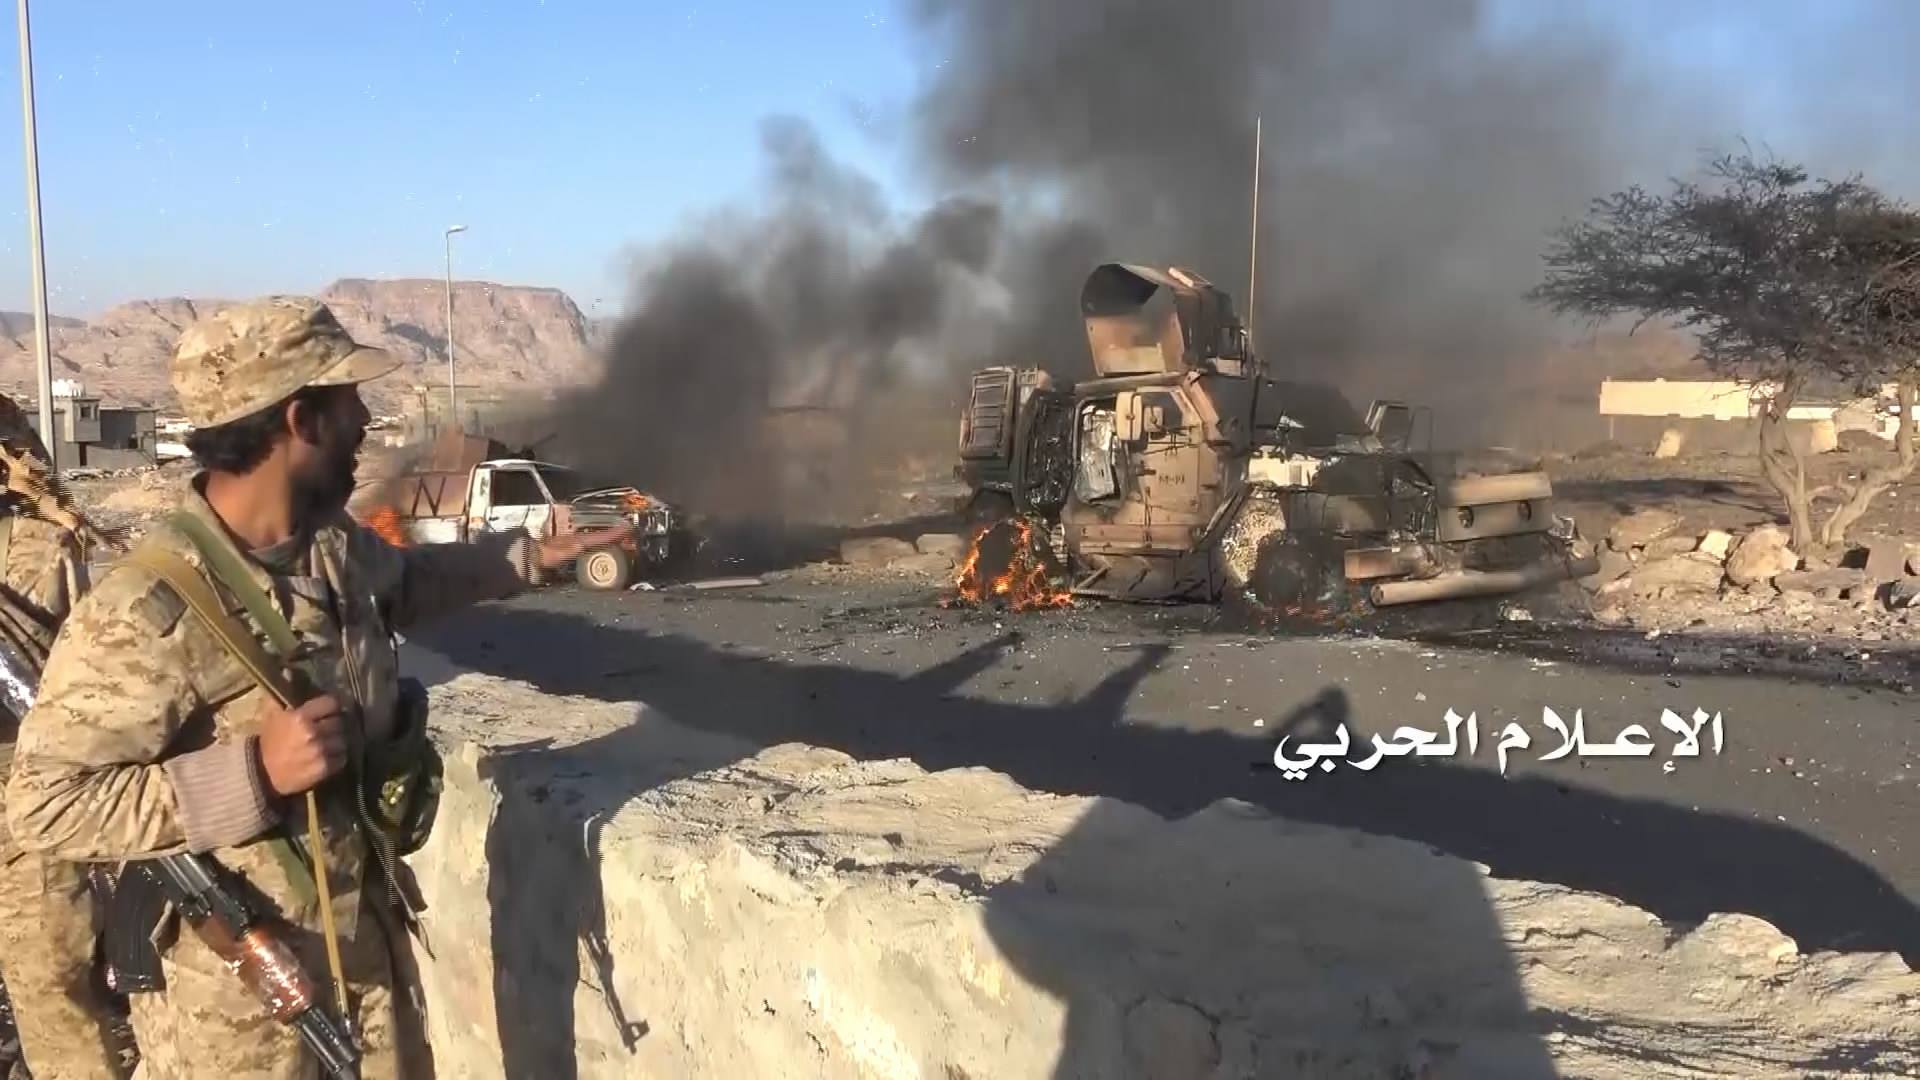 خطير للغاية.. مليشيات الحوثي تسيطر على معسكر استراتيجي بكل مواقعه ومعداته بتواطؤ فاضح من الشرعية